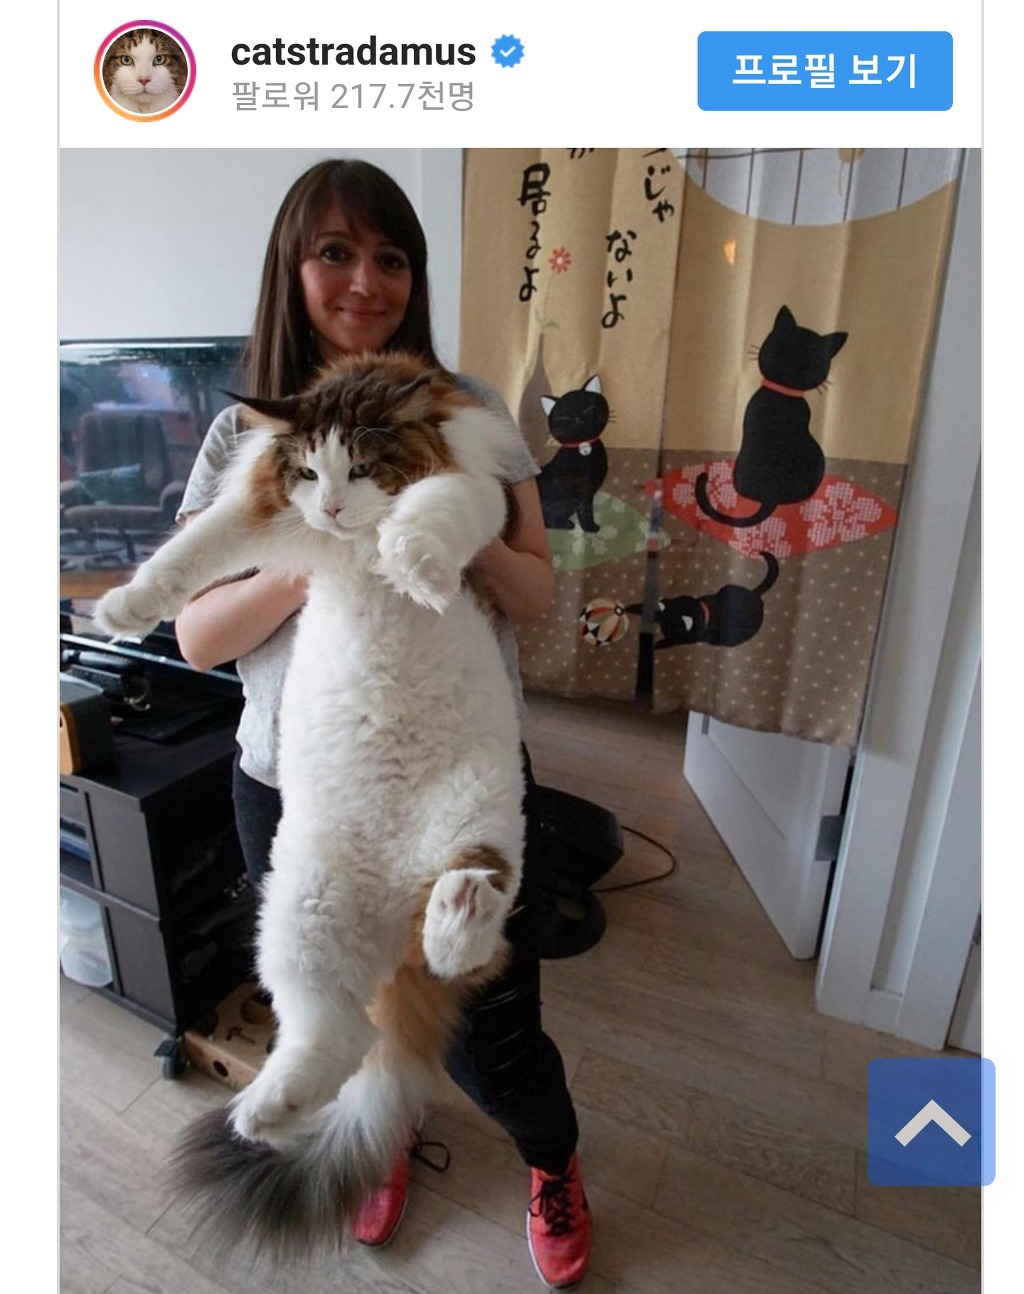 인스타 팔로우 20만이 넘는 거대 고양이